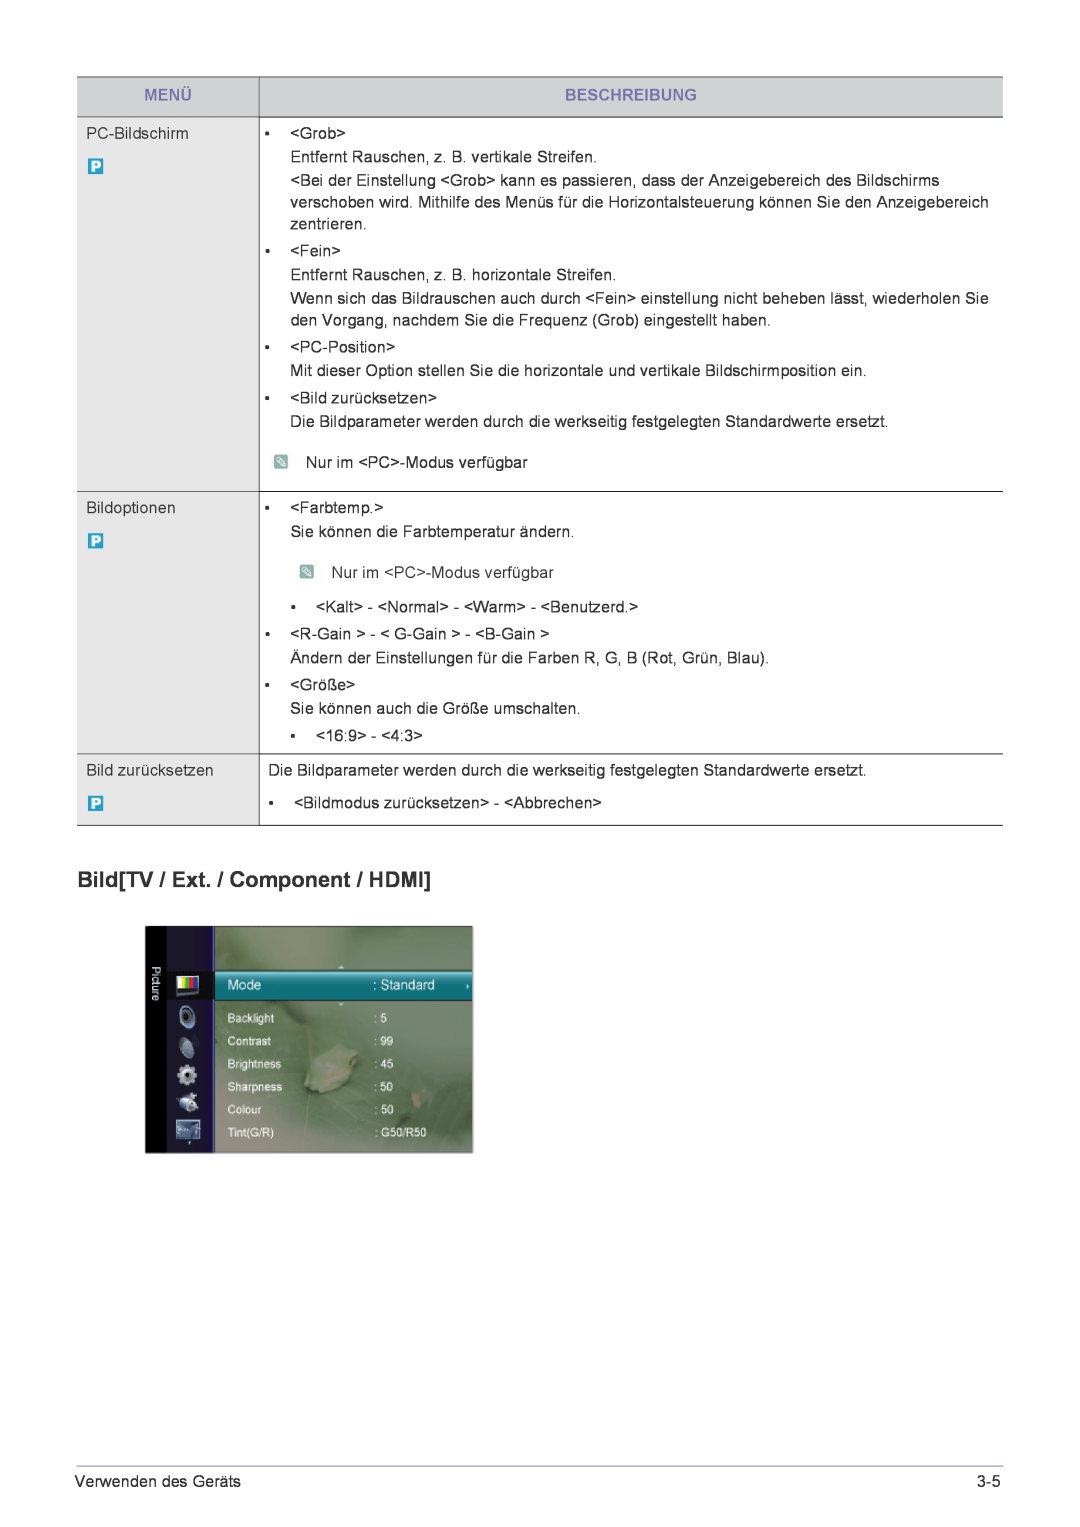 Samsung LS24EMLKF/EN manual BildTV / Ext. / Component / HDMI, Menü, Beschreibung 